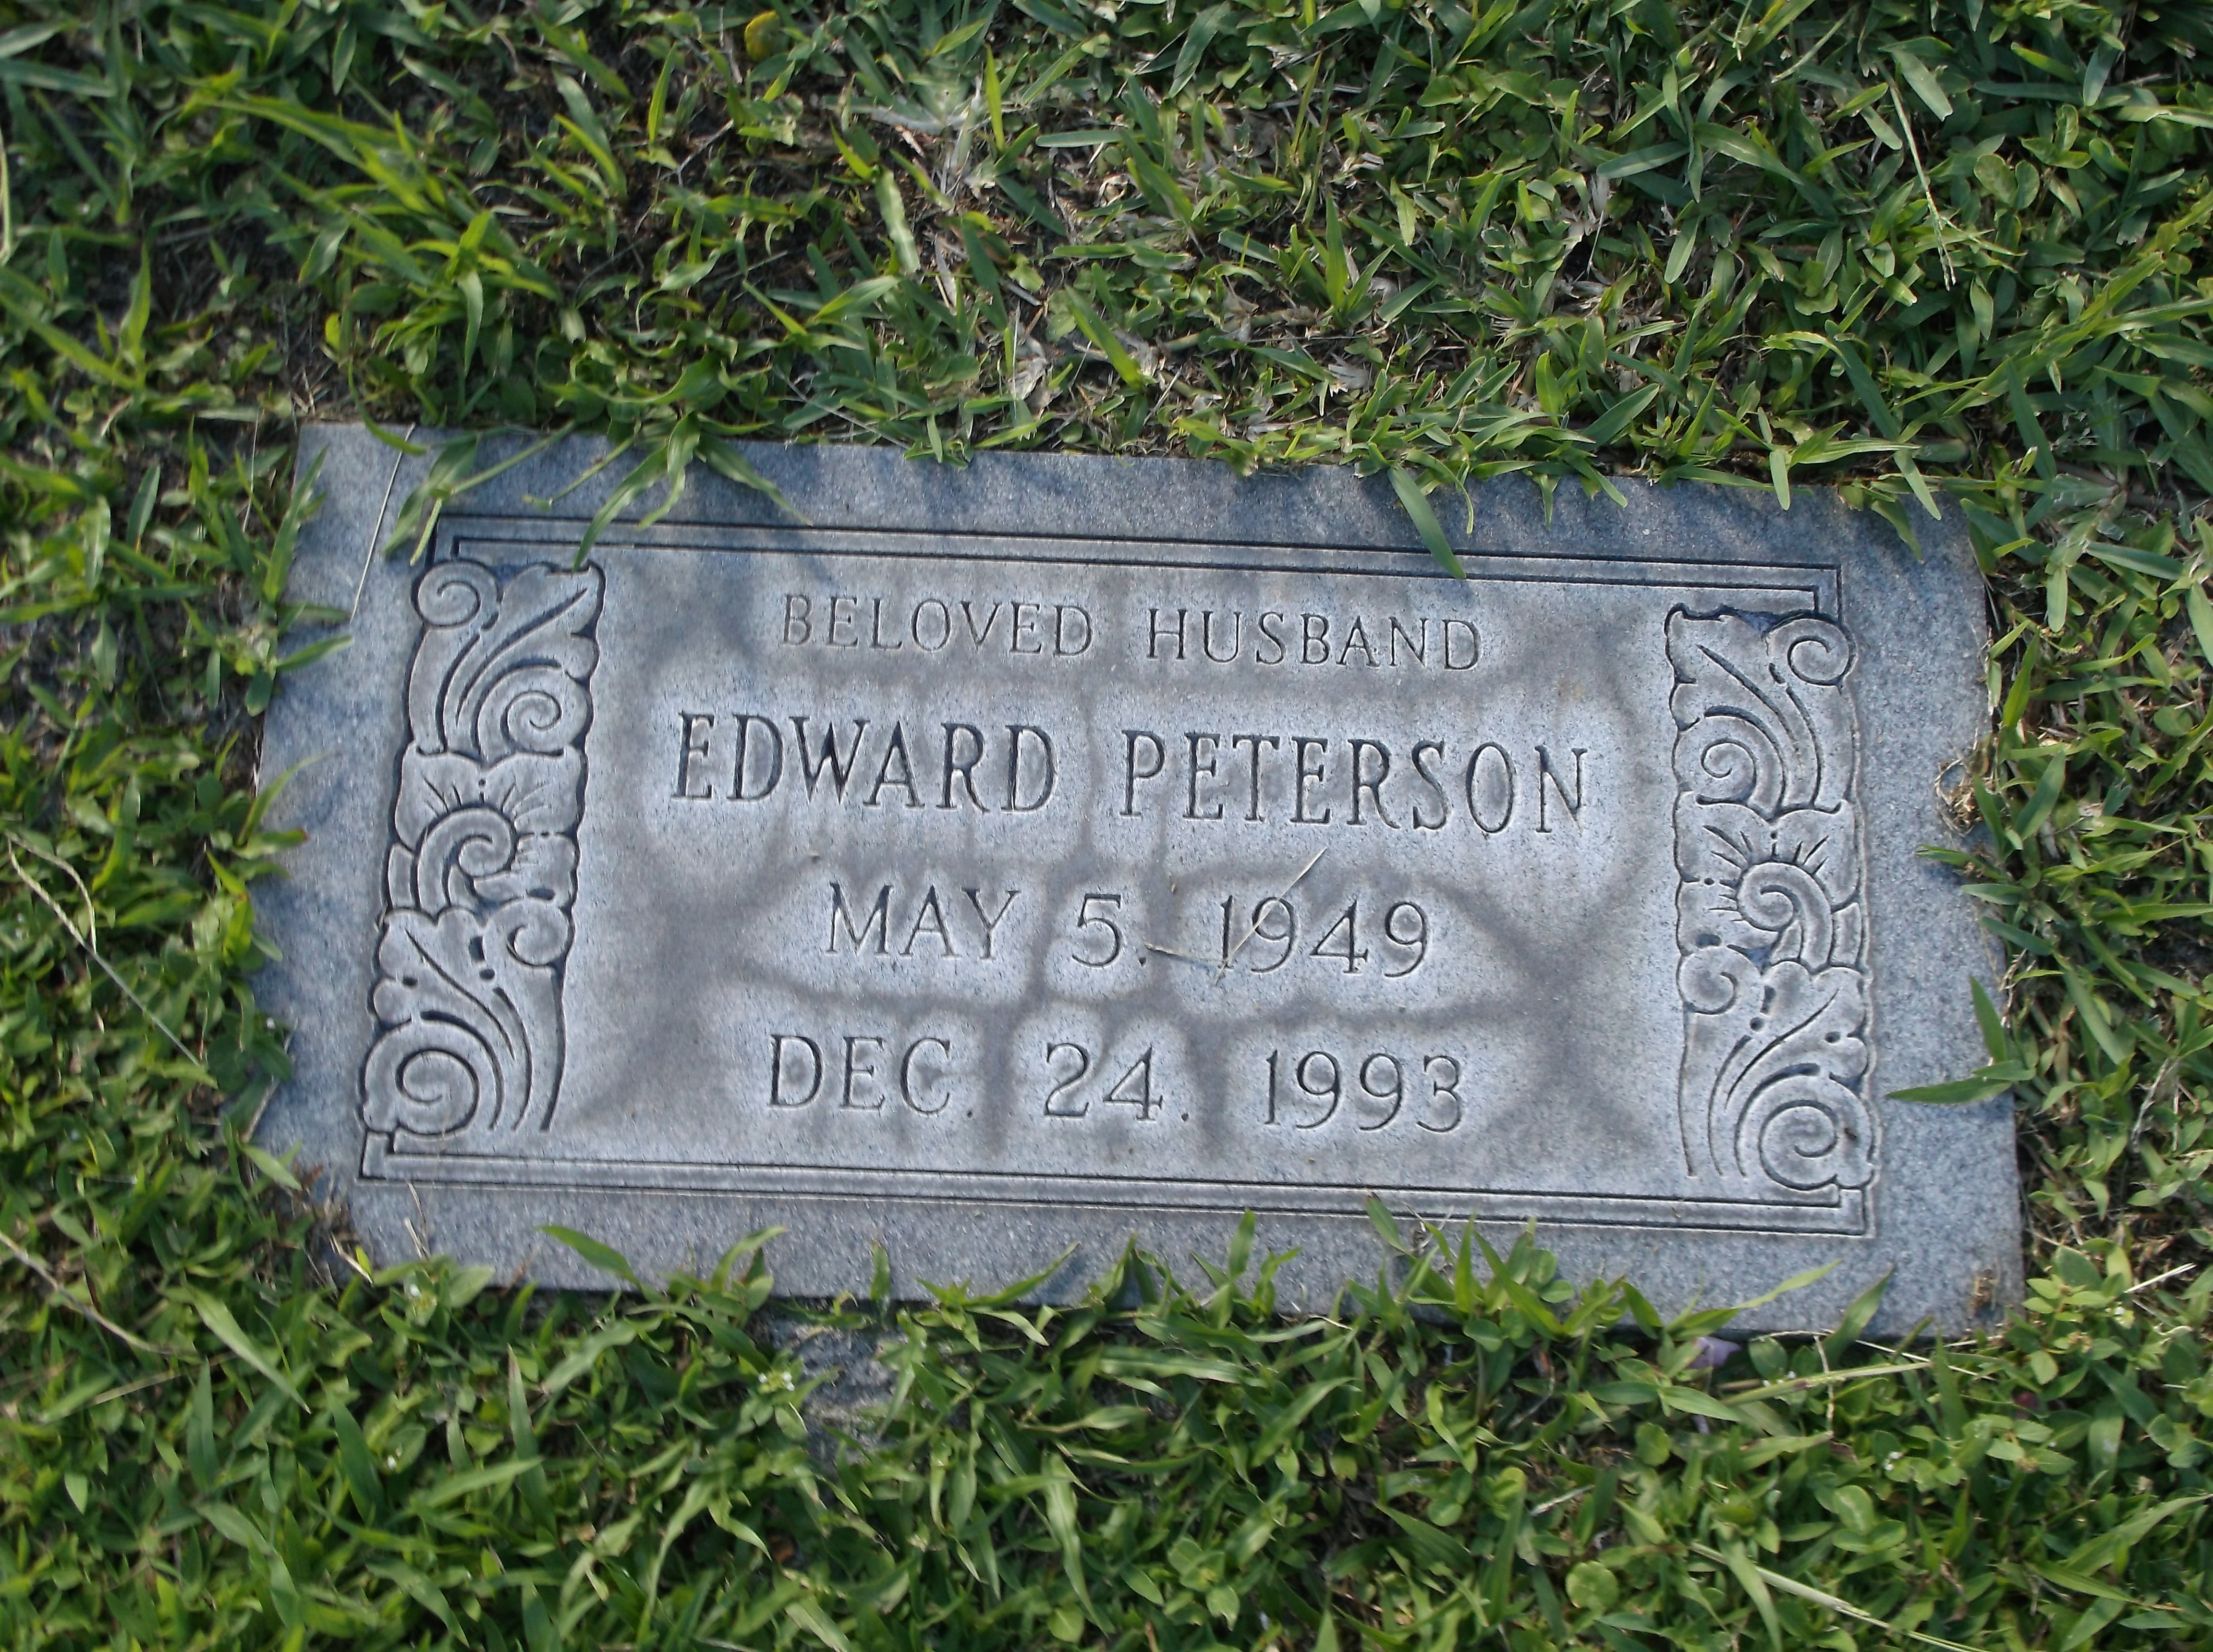 Edward Peterson